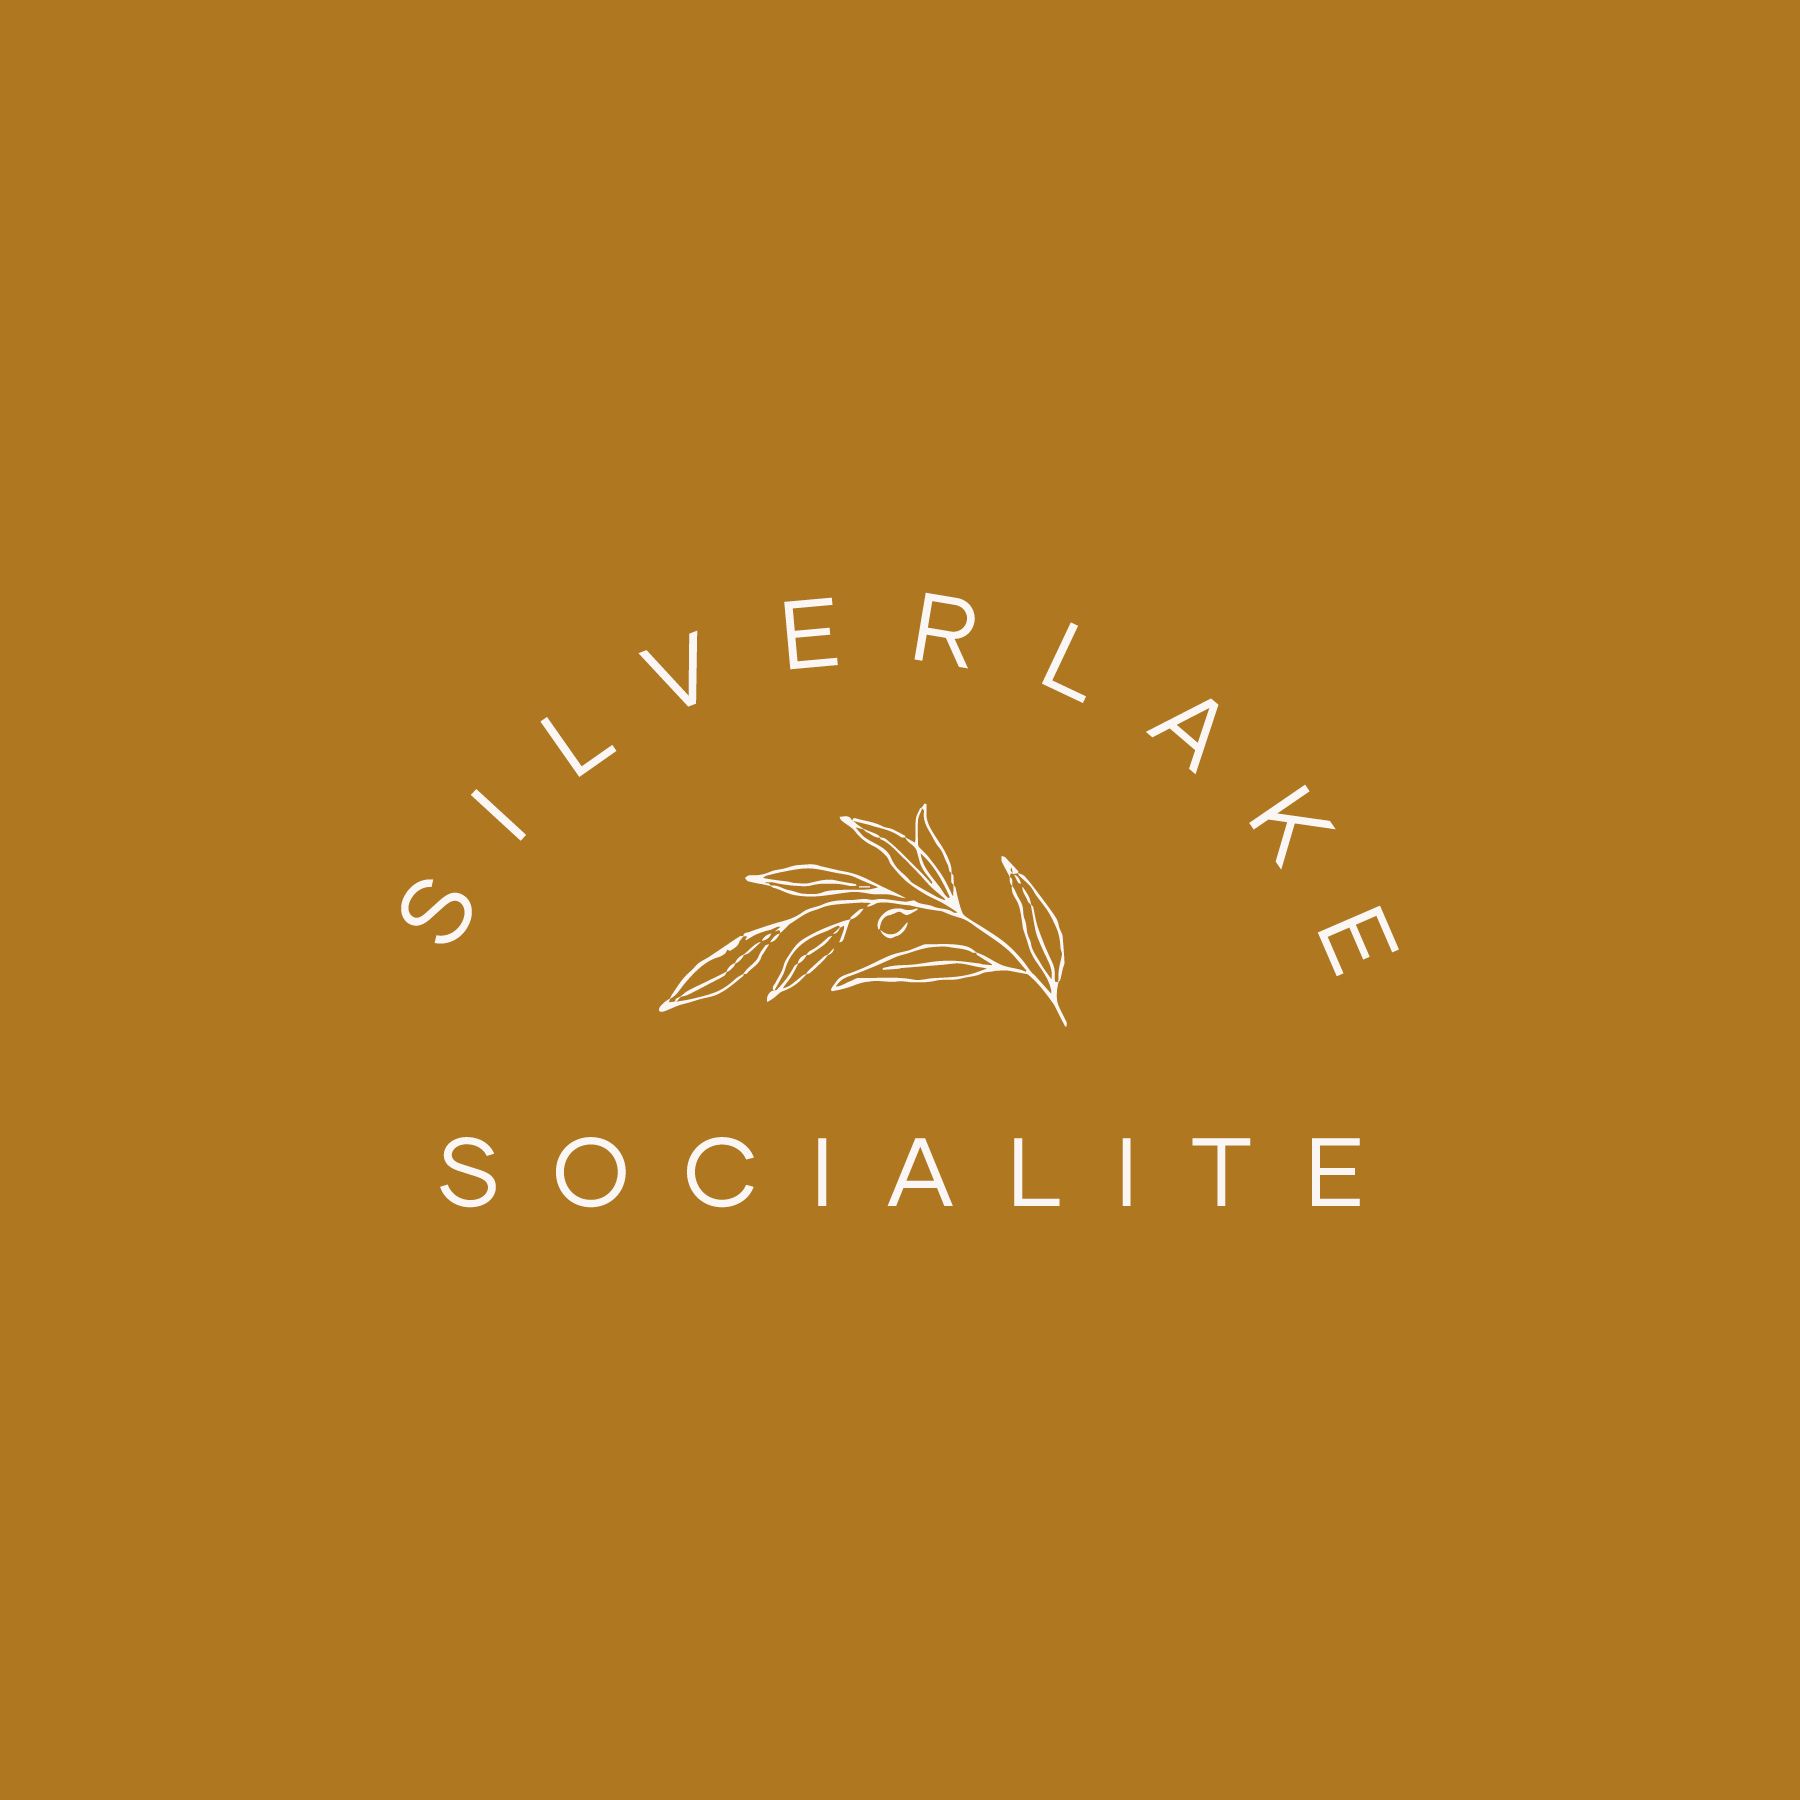 Silverlake Socialite Logo